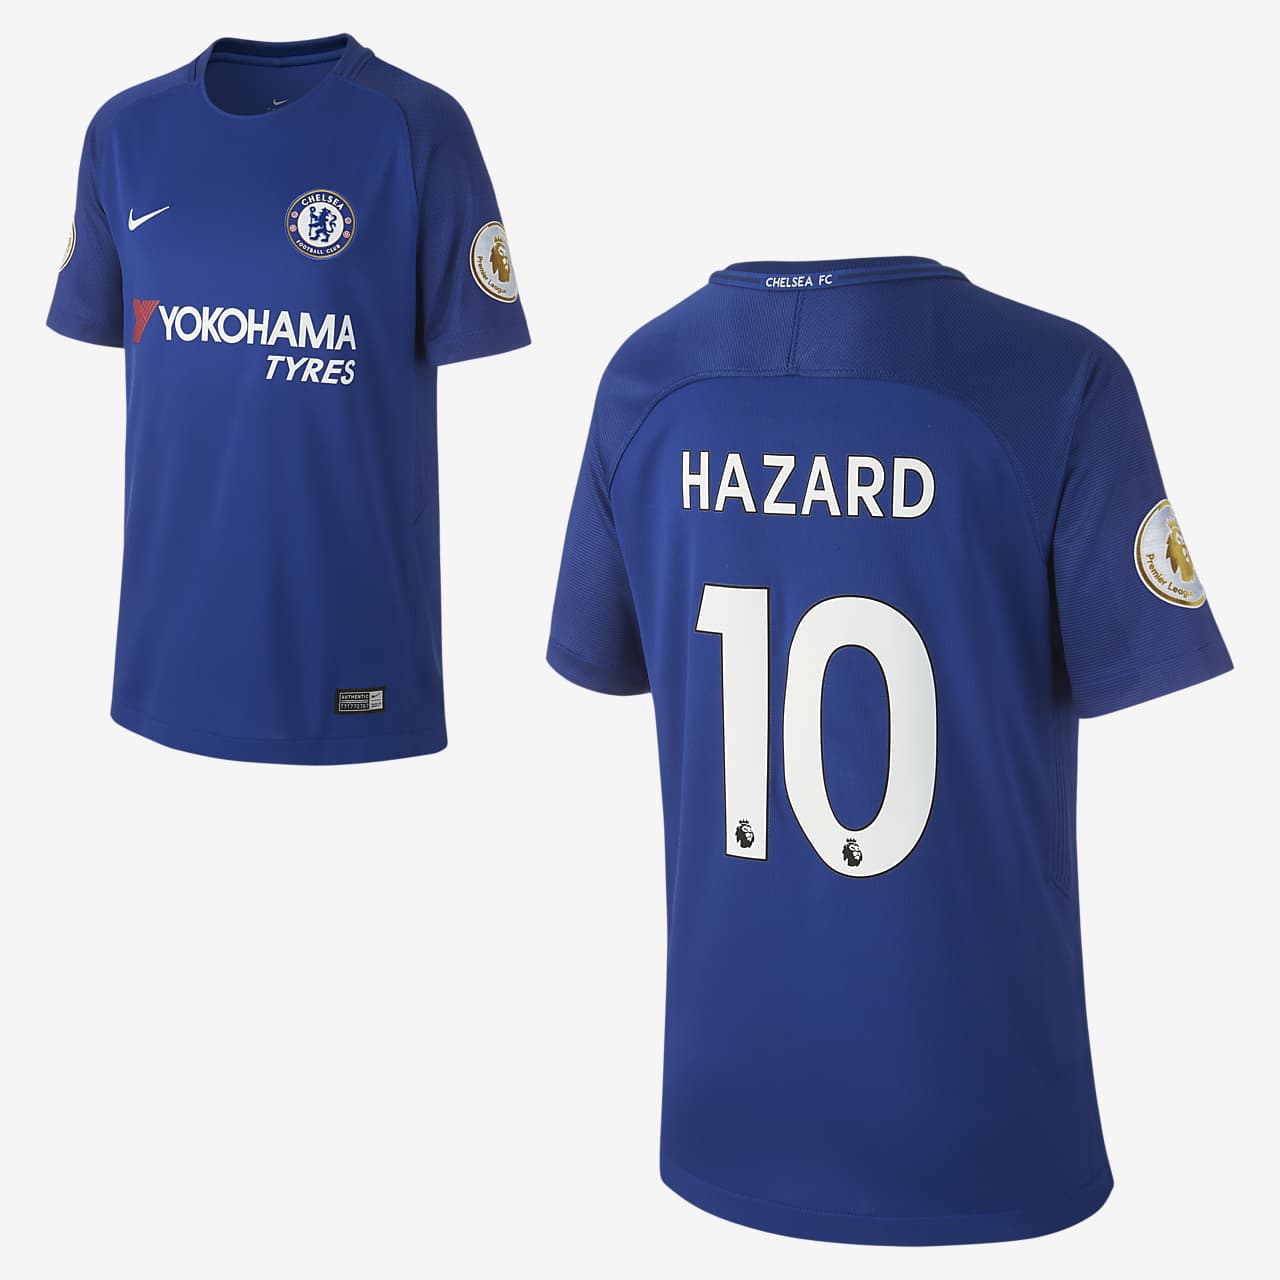 Camiseta de fútbol para niños talla grande Chelsea FC (Eden Hazard) de  local para aficionados, temporada 2017/18. Nike CL